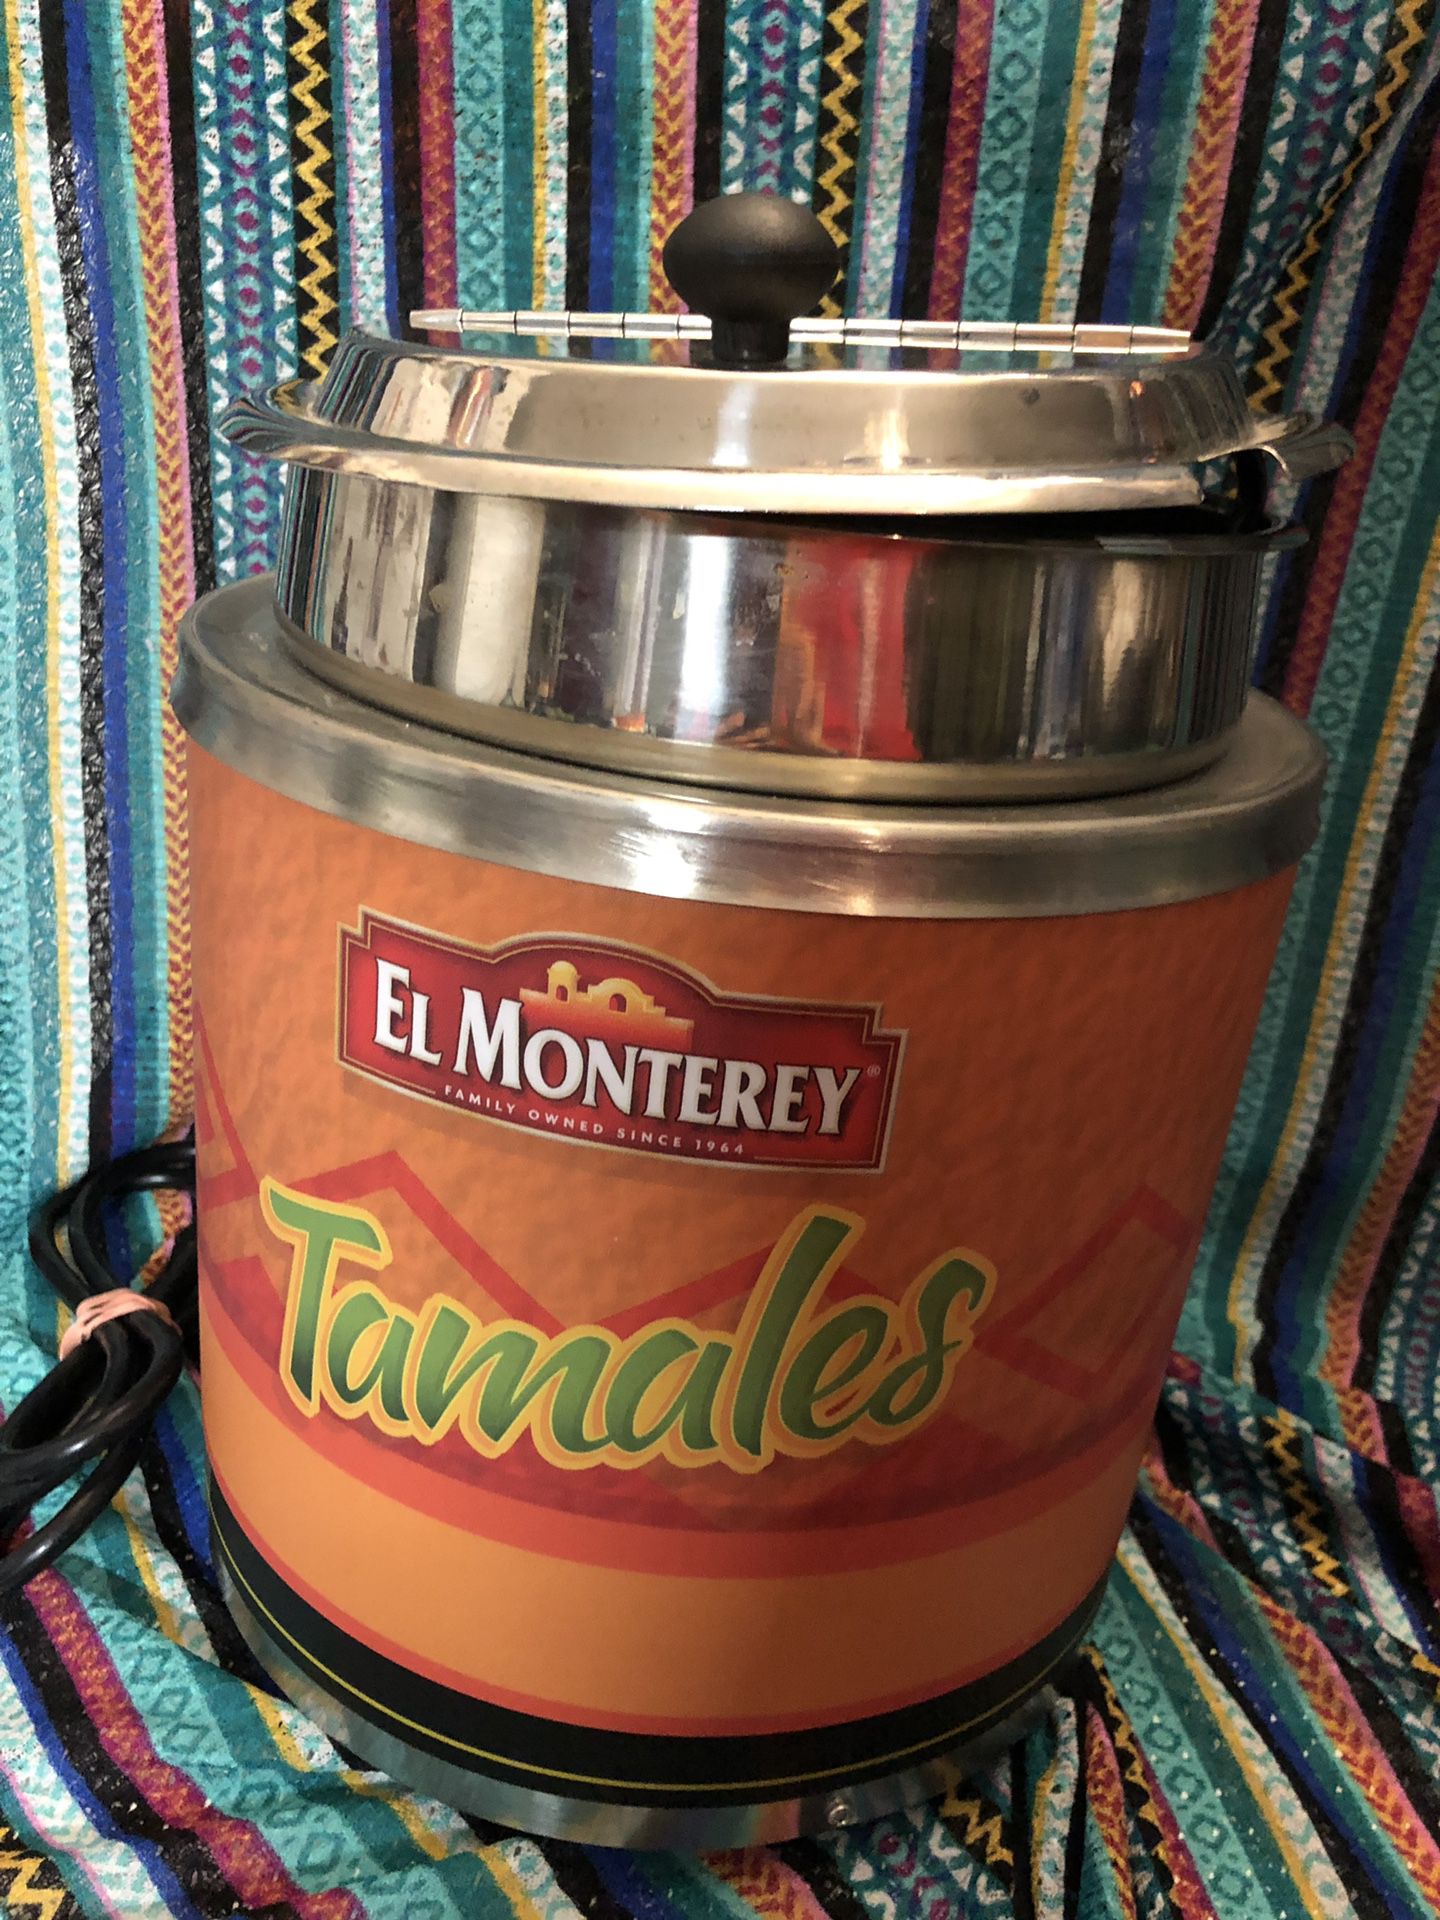 El Monterrey tamales Electric steamer pot